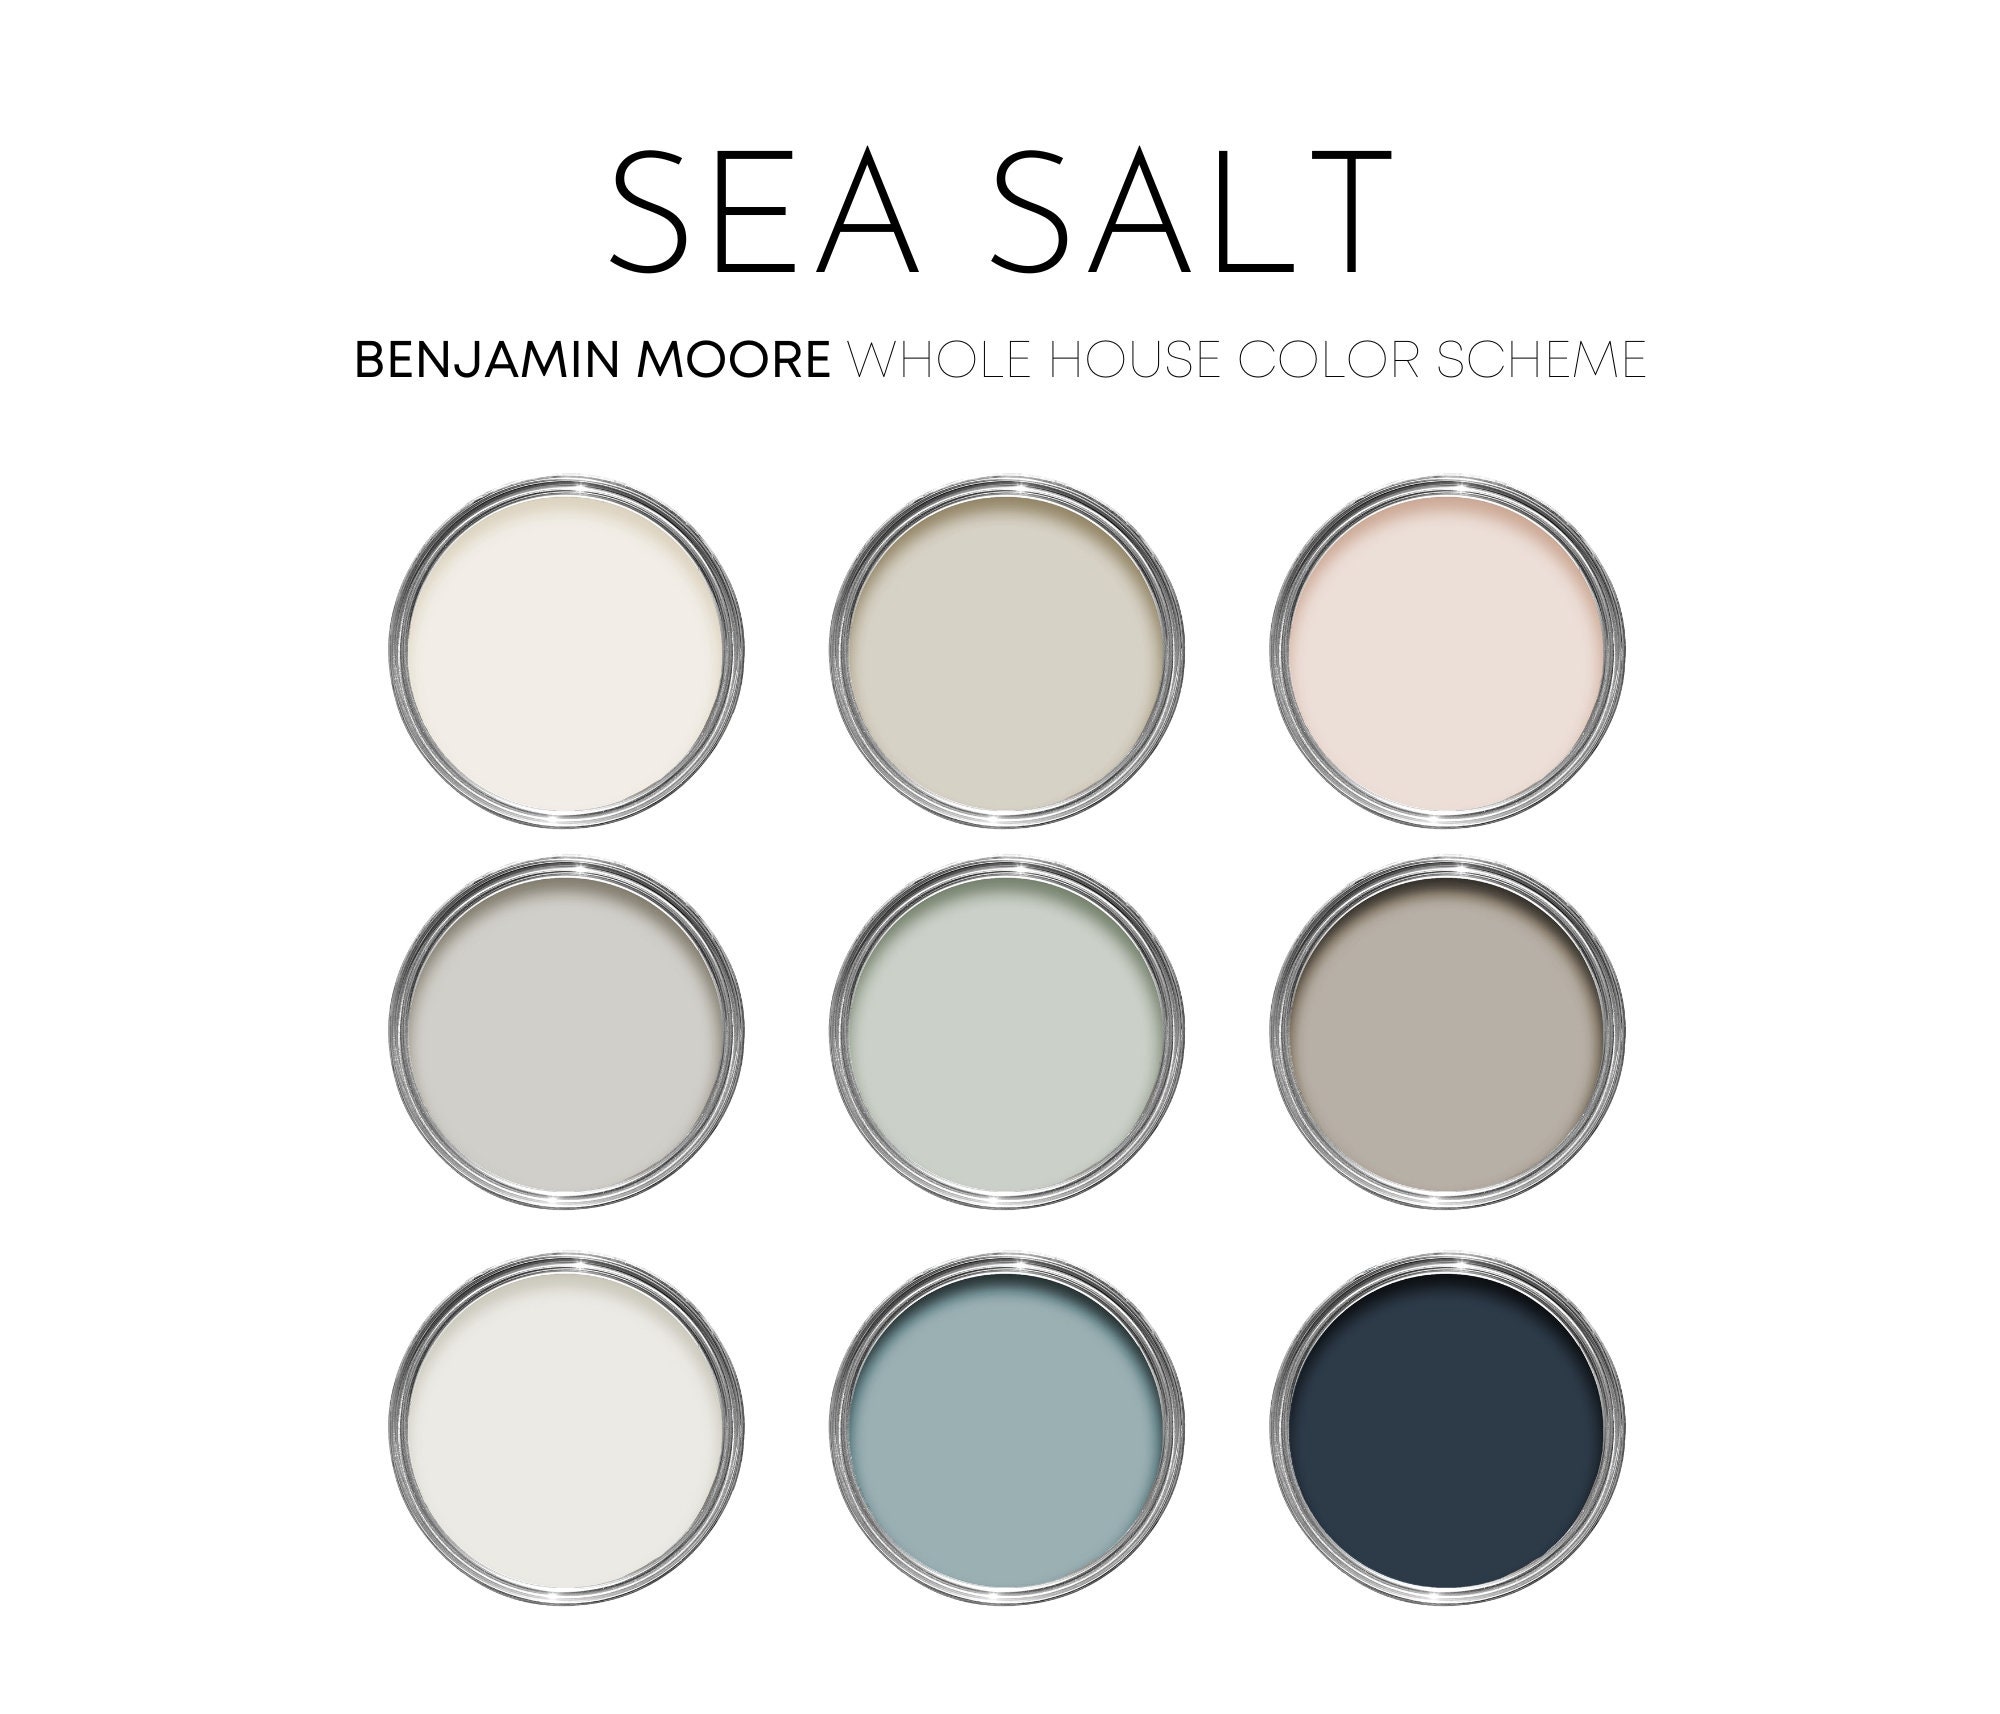 Sea Salt Benjamin Moore Paint Palette Modern Coastal Interior Paint ...